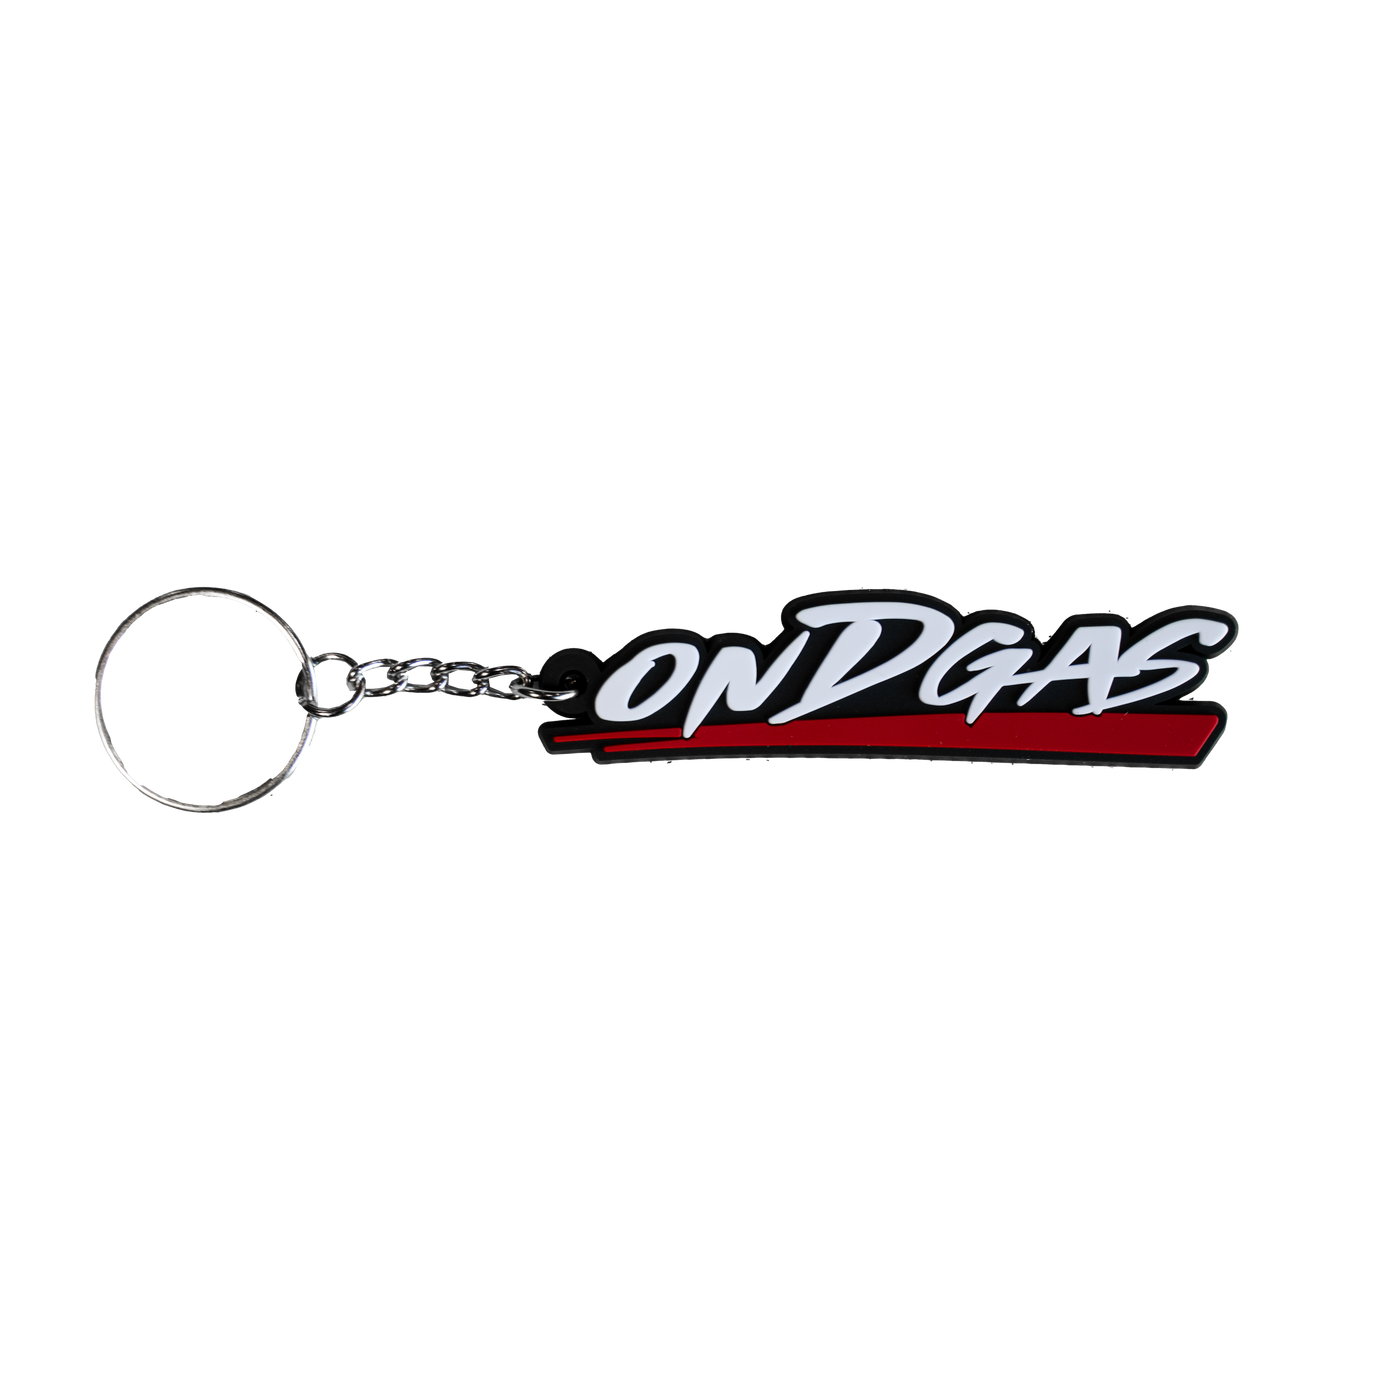 ONDGAS keychain